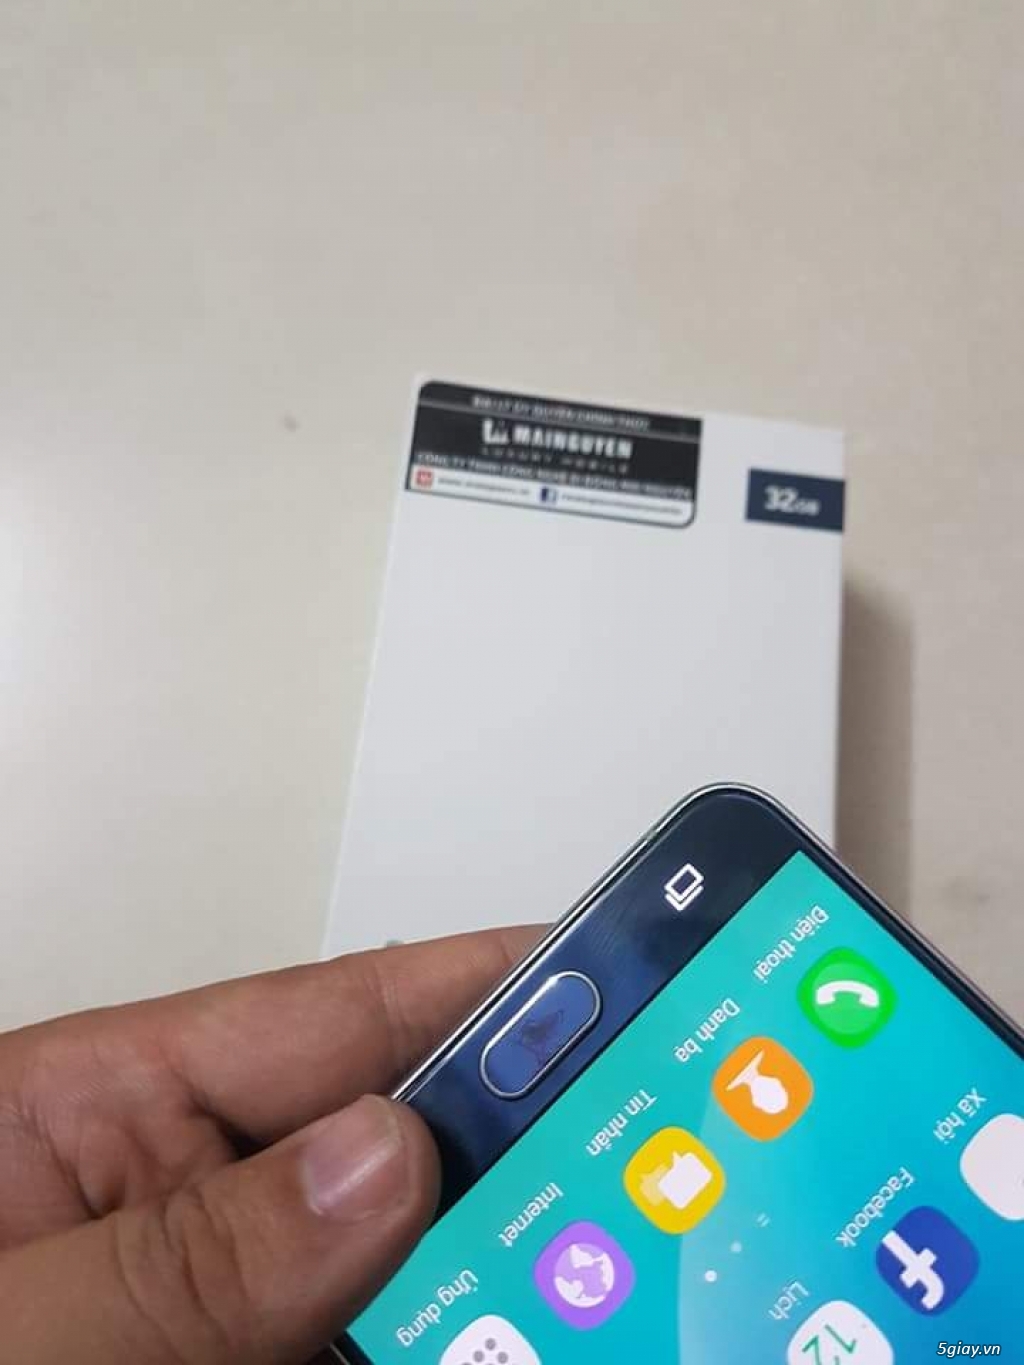 Note 5 xanh đen, chính hãng Samsung Việt Nam, full box - 1